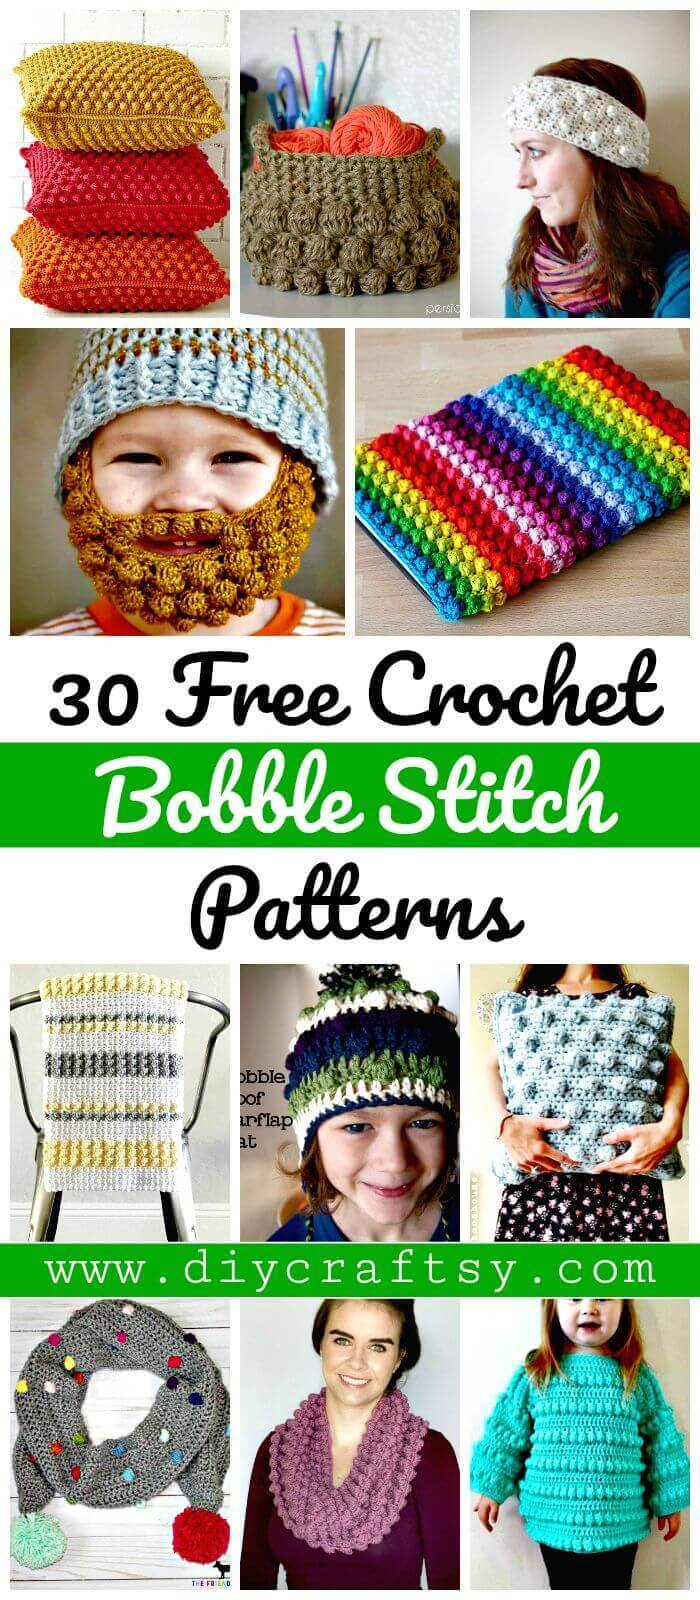 Crochet Bobble Stitch - 30 Free Crochet Bobble Stitch Patterns - DIY Crafts